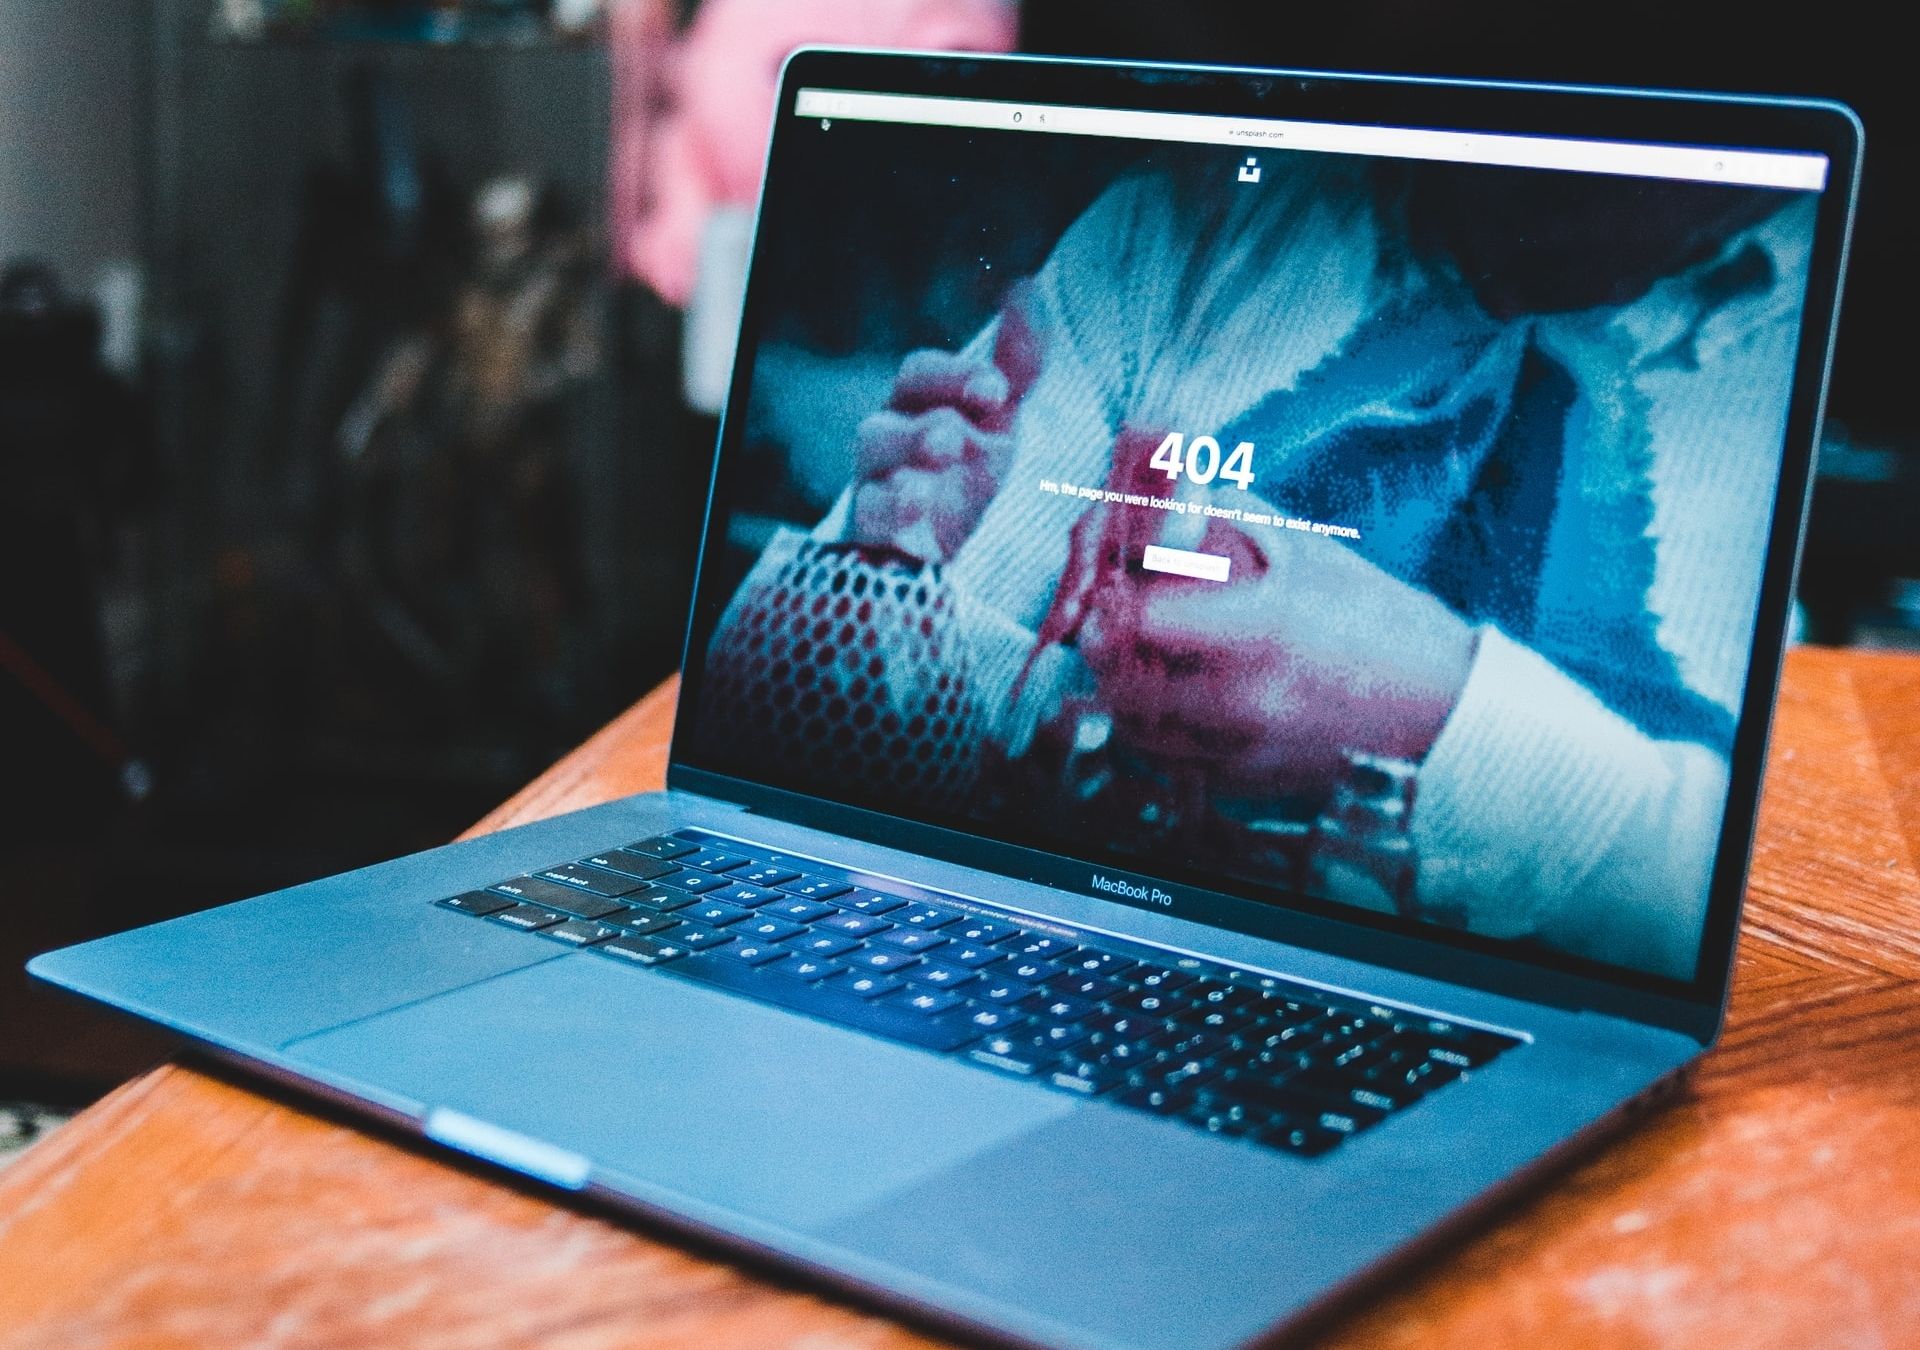 404 screen on laptop - Adobe Flash potrebbe essere morto, ma può ancora essere una minaccia per la sicurezza